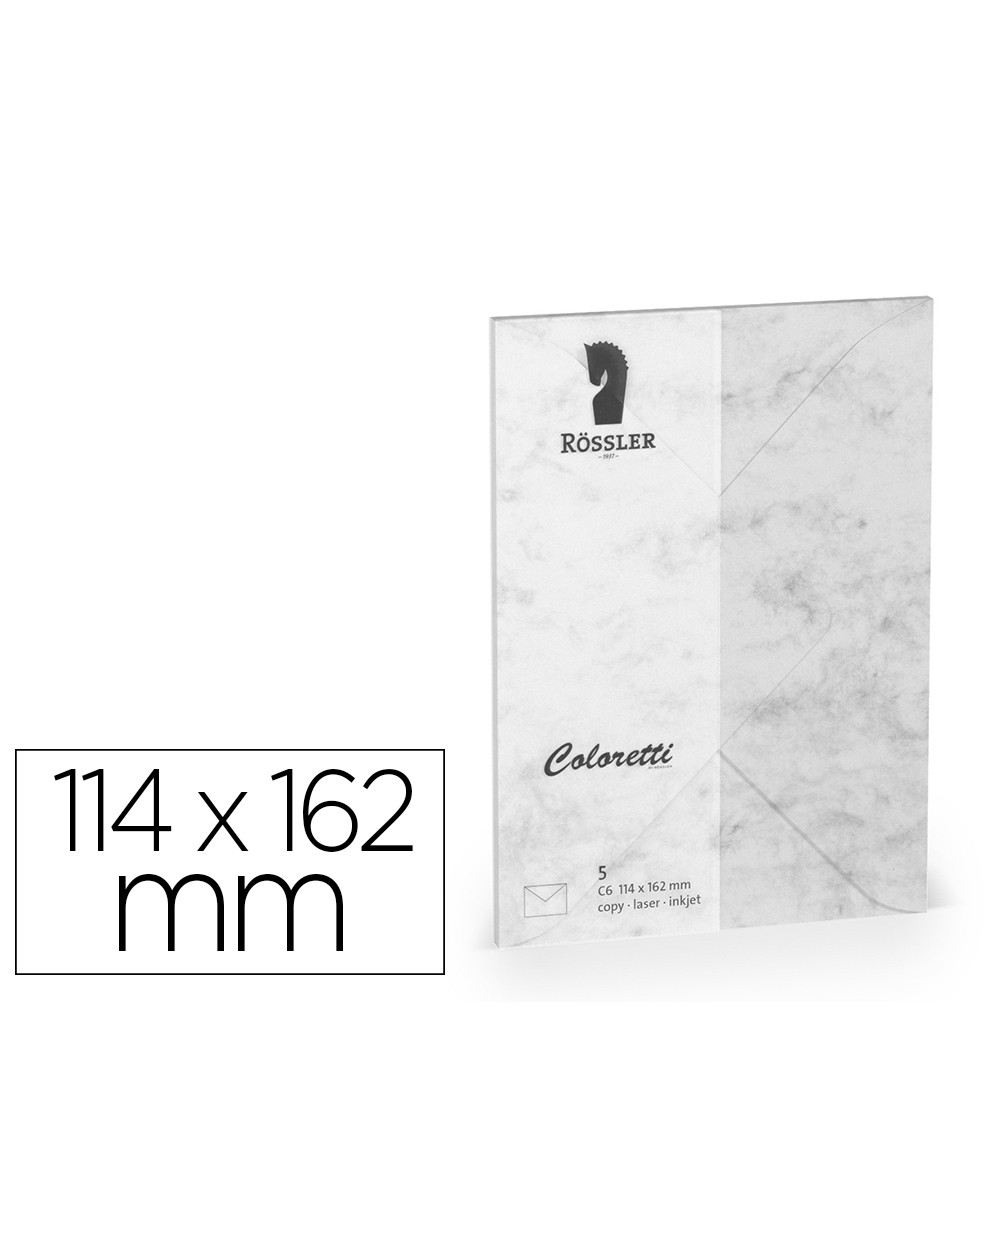 Sobre rossler coloretti c6 ministro color marmol gris 114x162 mm pack de 5 unidades